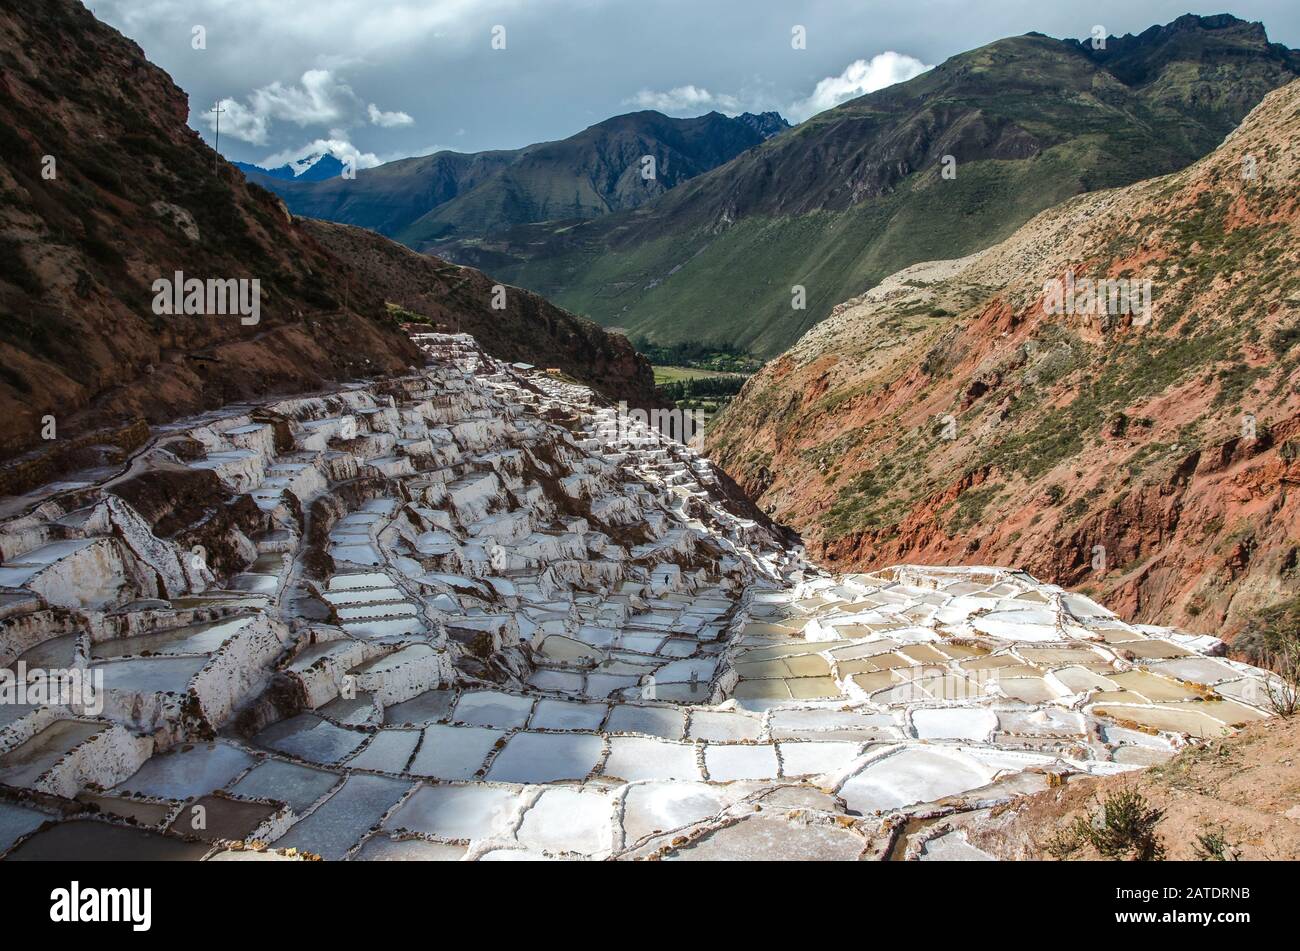 Vue pittoresque sur les terrasses de Salinas de Maras, au Pérou. Sel mine naturelle. Inca Salt casseroles à Maras, près de Cuzco dans la Vallée Sacrée, au Pérou Banque D'Images